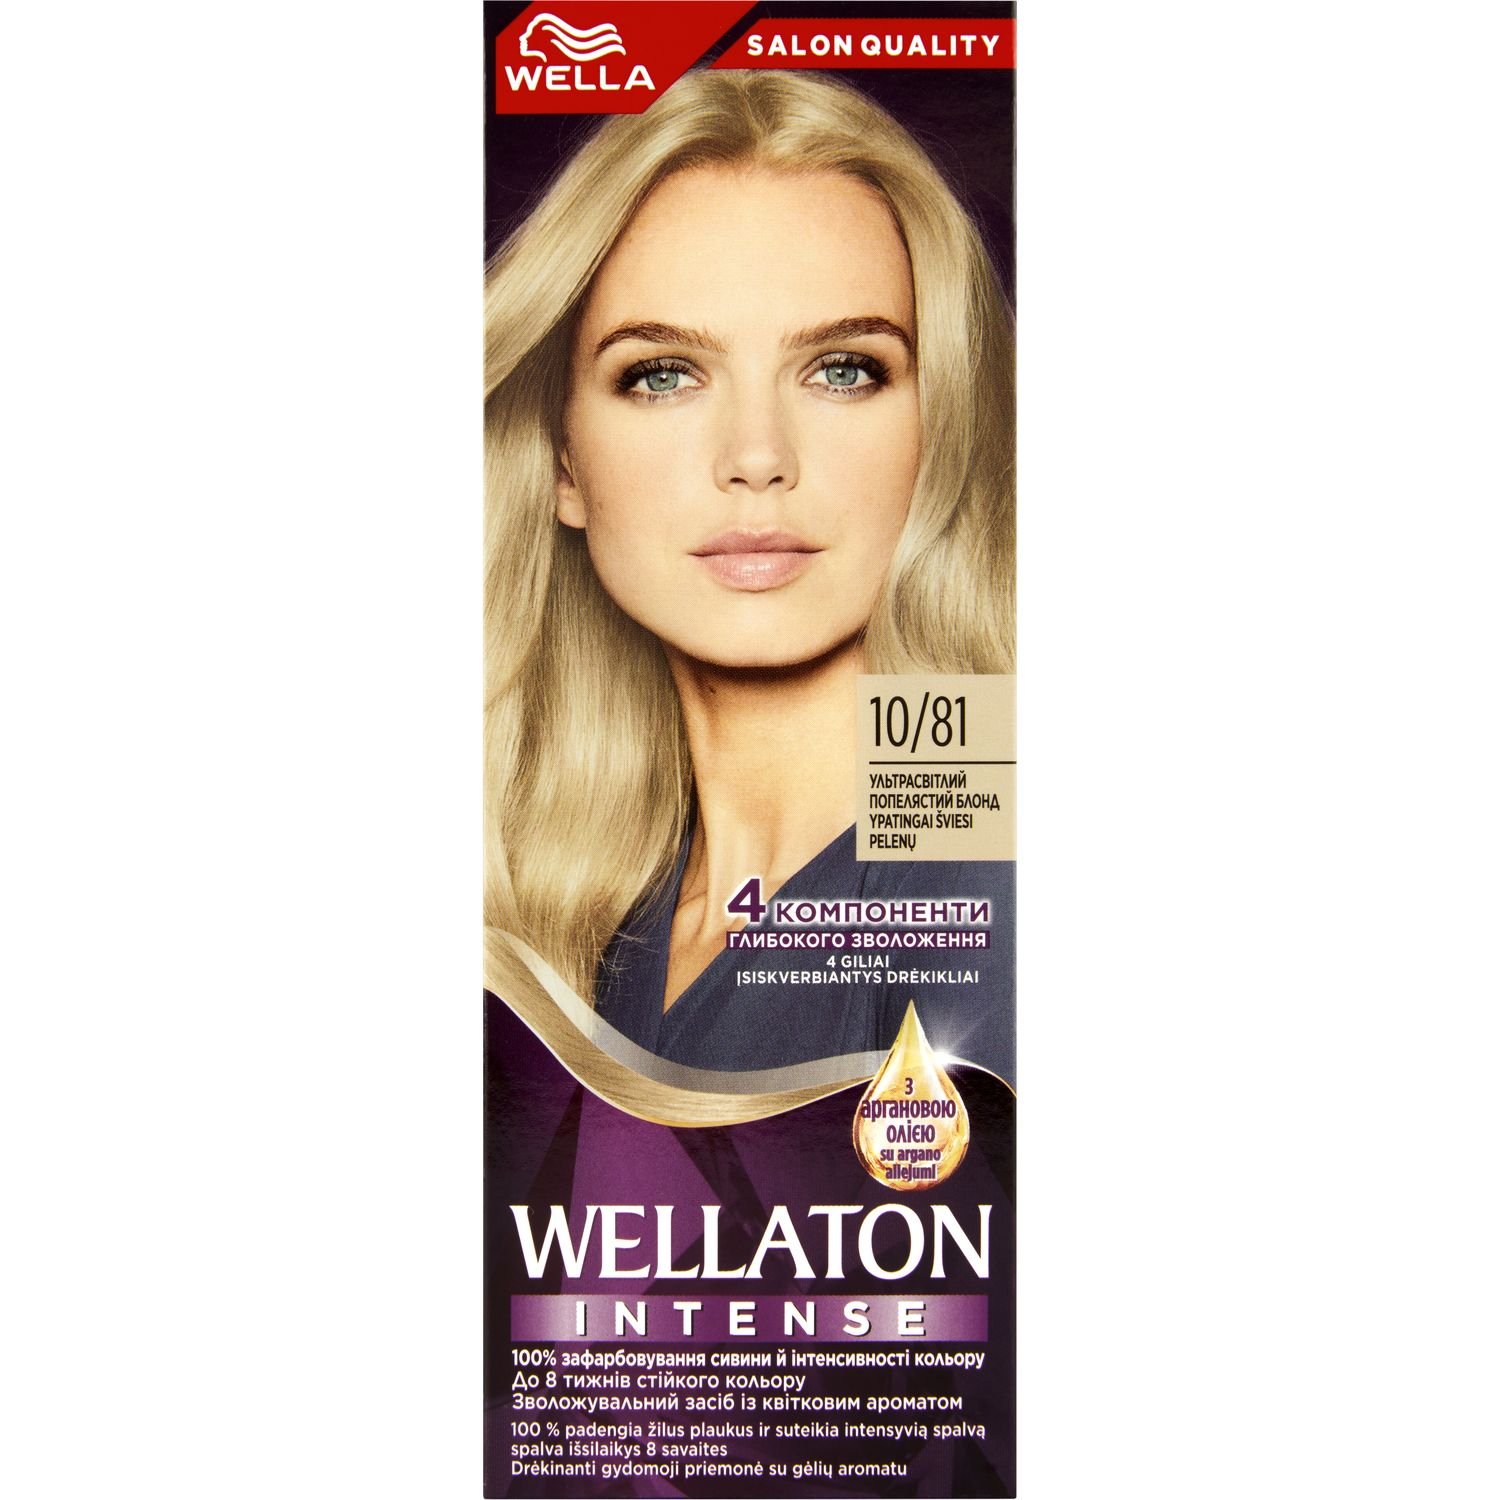 Інтенсивна крем-фарба для волосся Wellaton, відтінок 10/81 (Ультра світлий попелястий блонд), 110 мл - фото 1